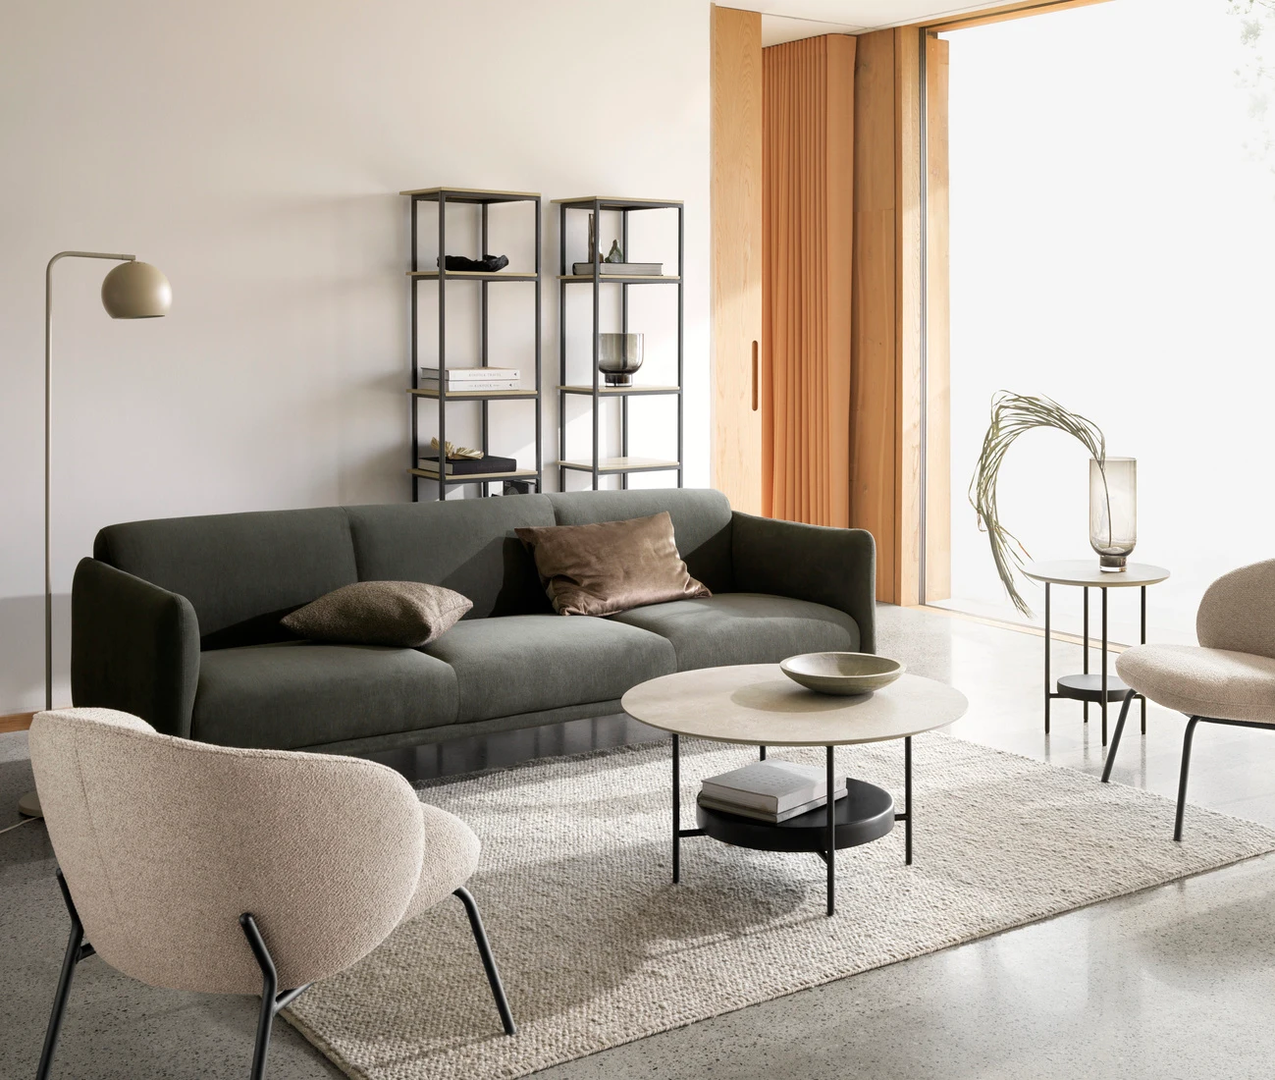 Nova generacija sofa može se pohvaliti ne samo dizajnom nego i materijalima